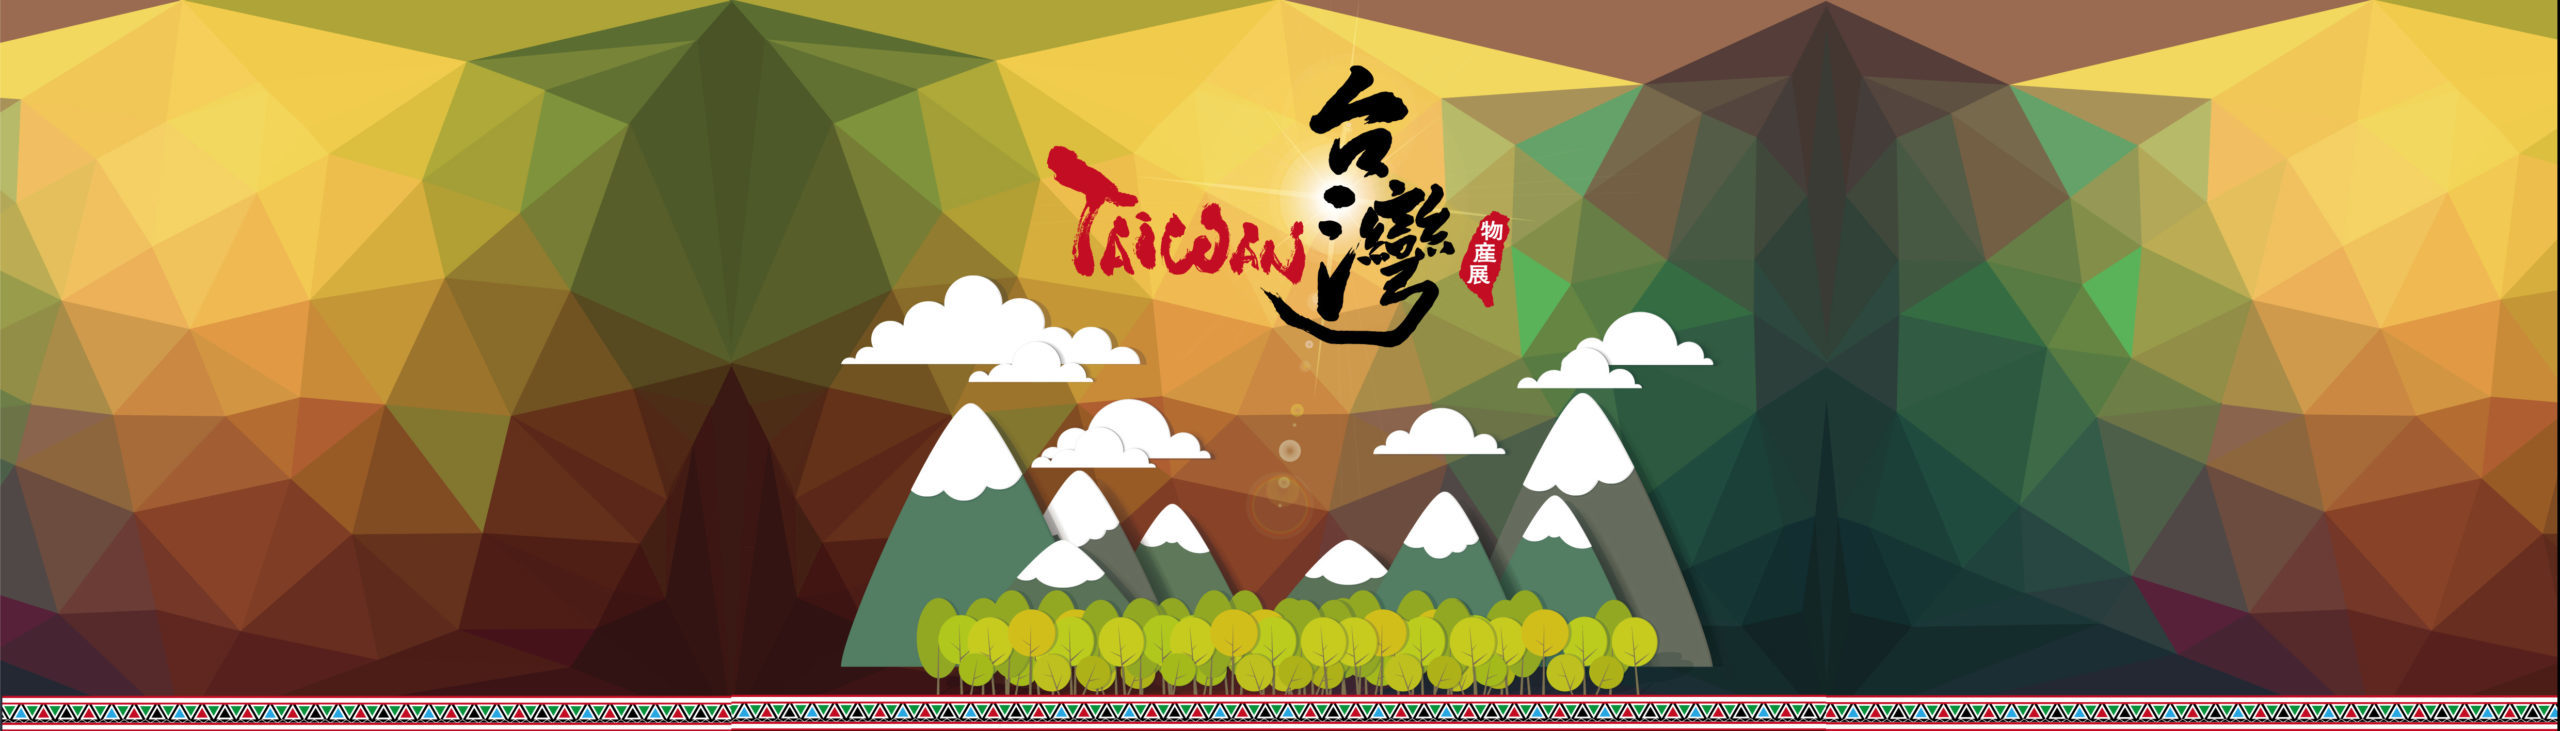 台湾物産展：広告デザイン